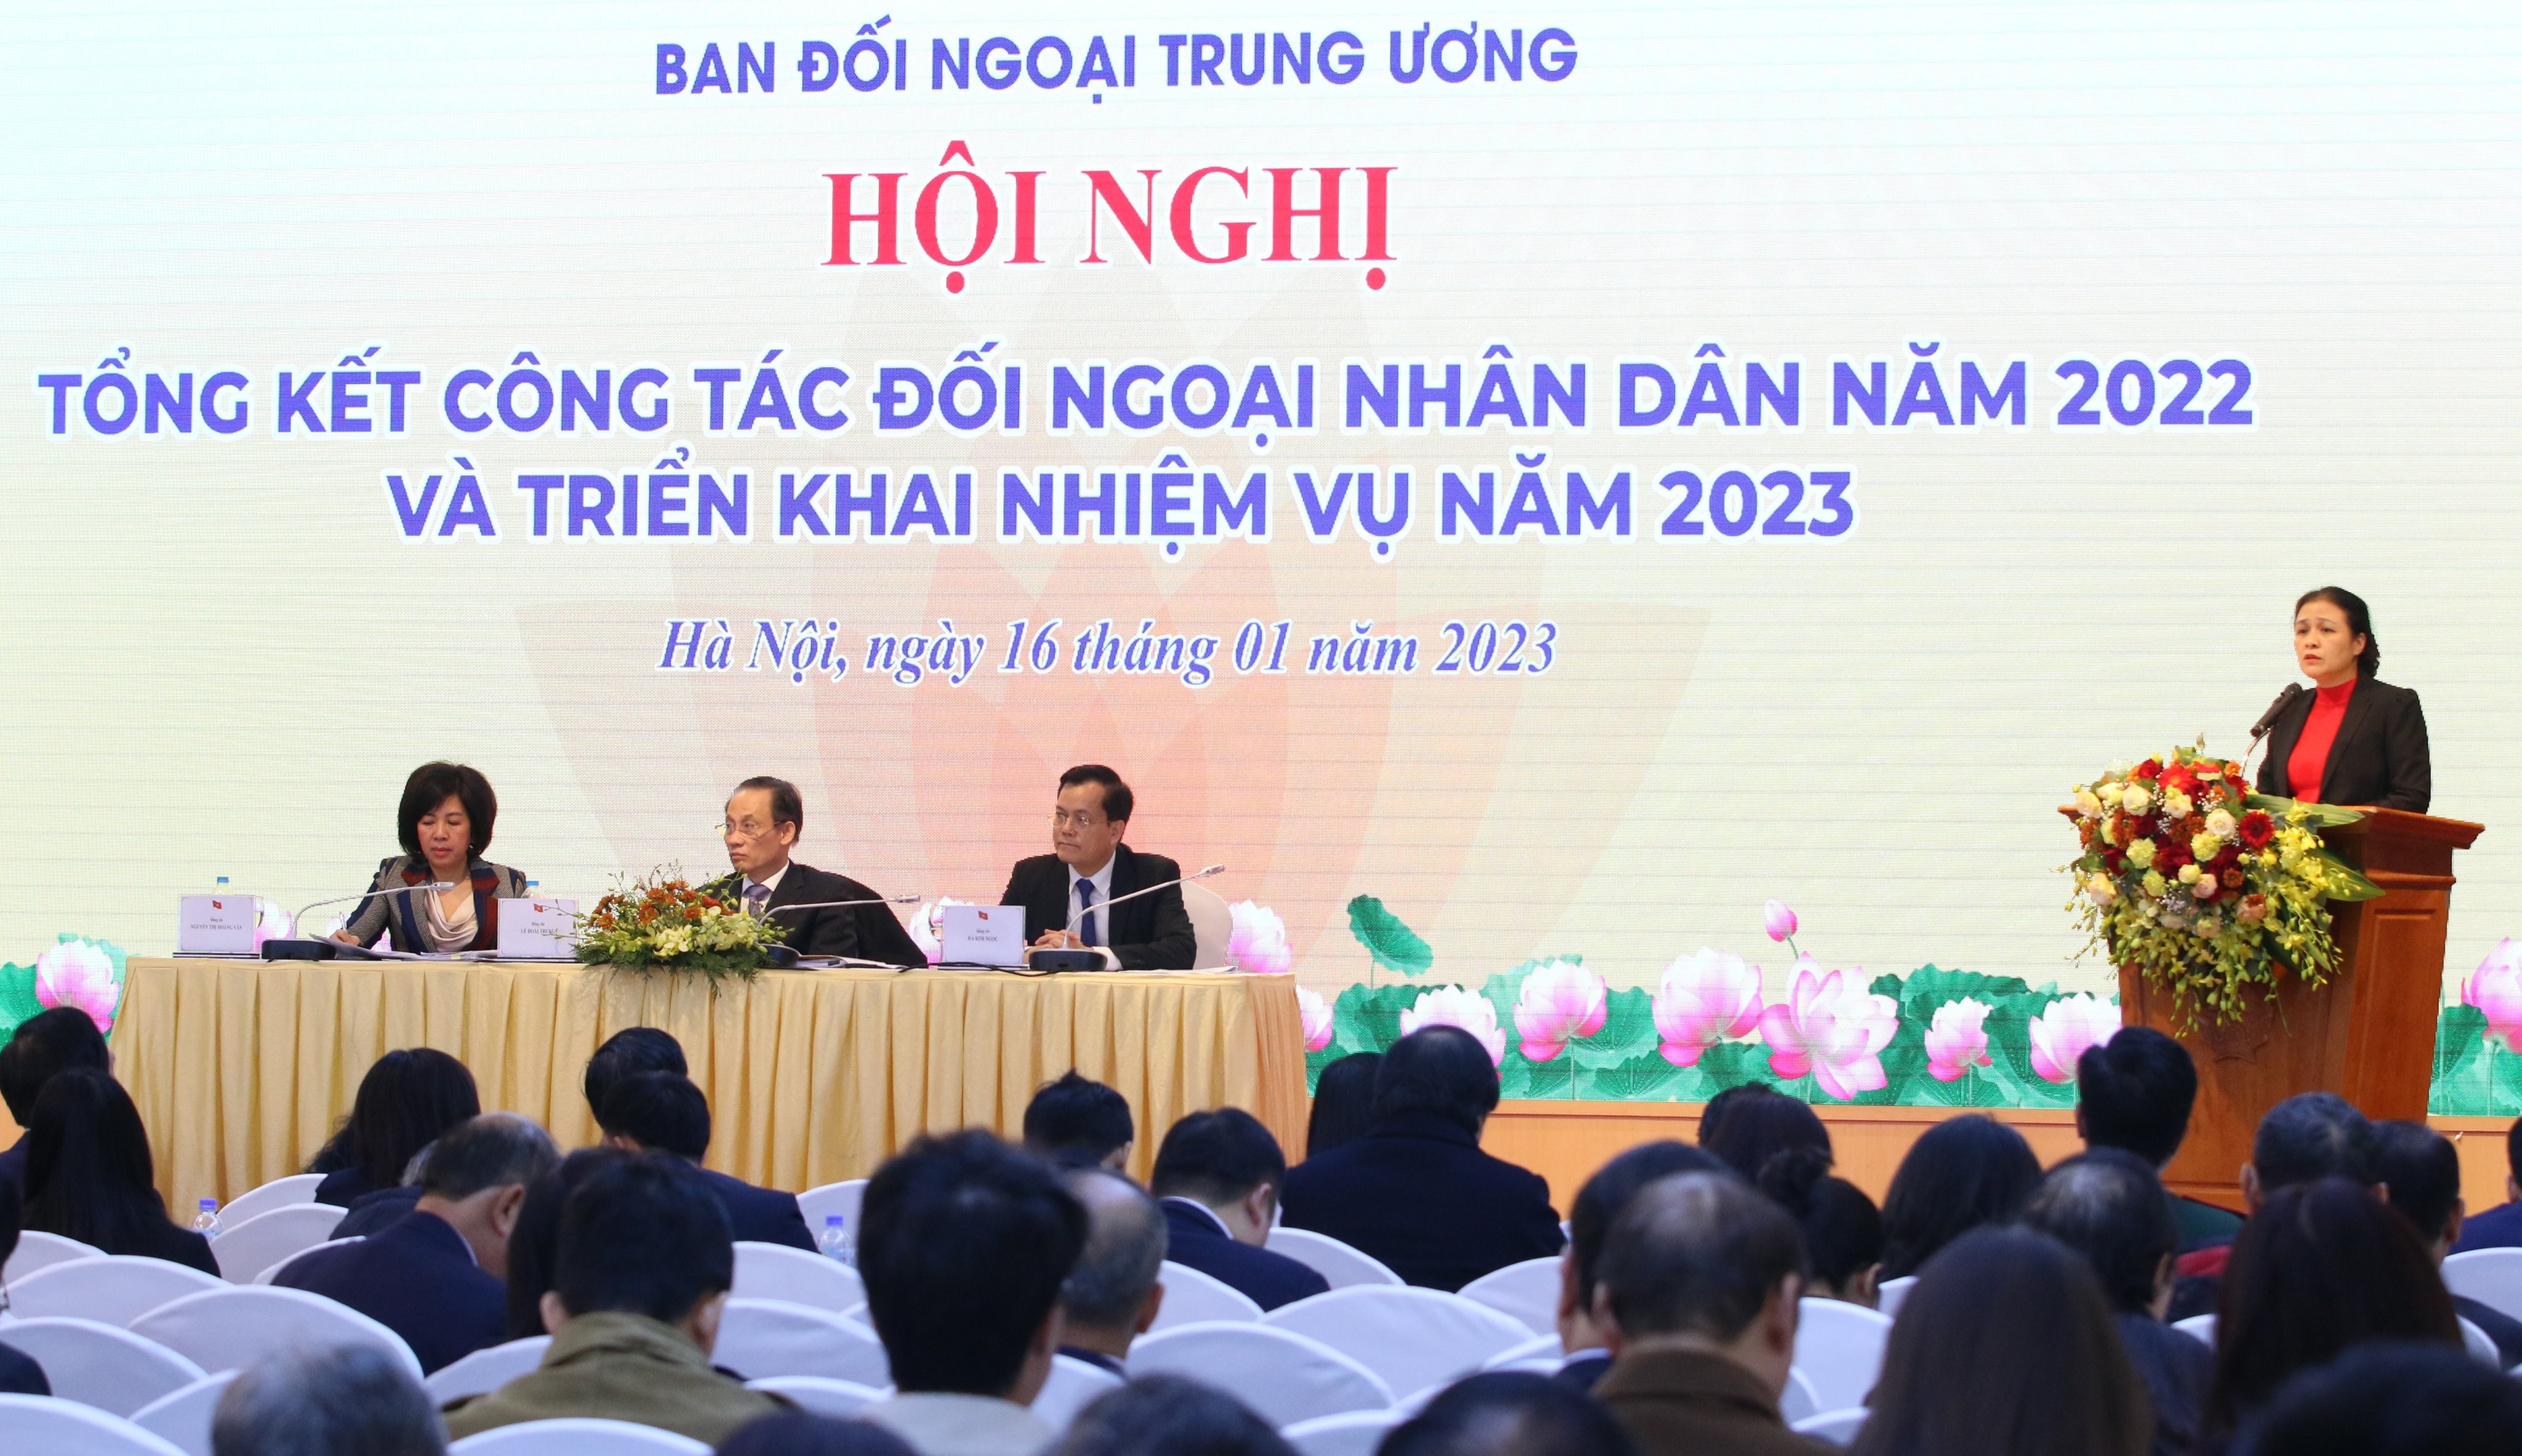 Bà Nguyễn Phương Nga, Chủ tịch Liên hiệp các tổ chức hữu nghị Việt Nam trình bày tham luận tại Hội nghị.